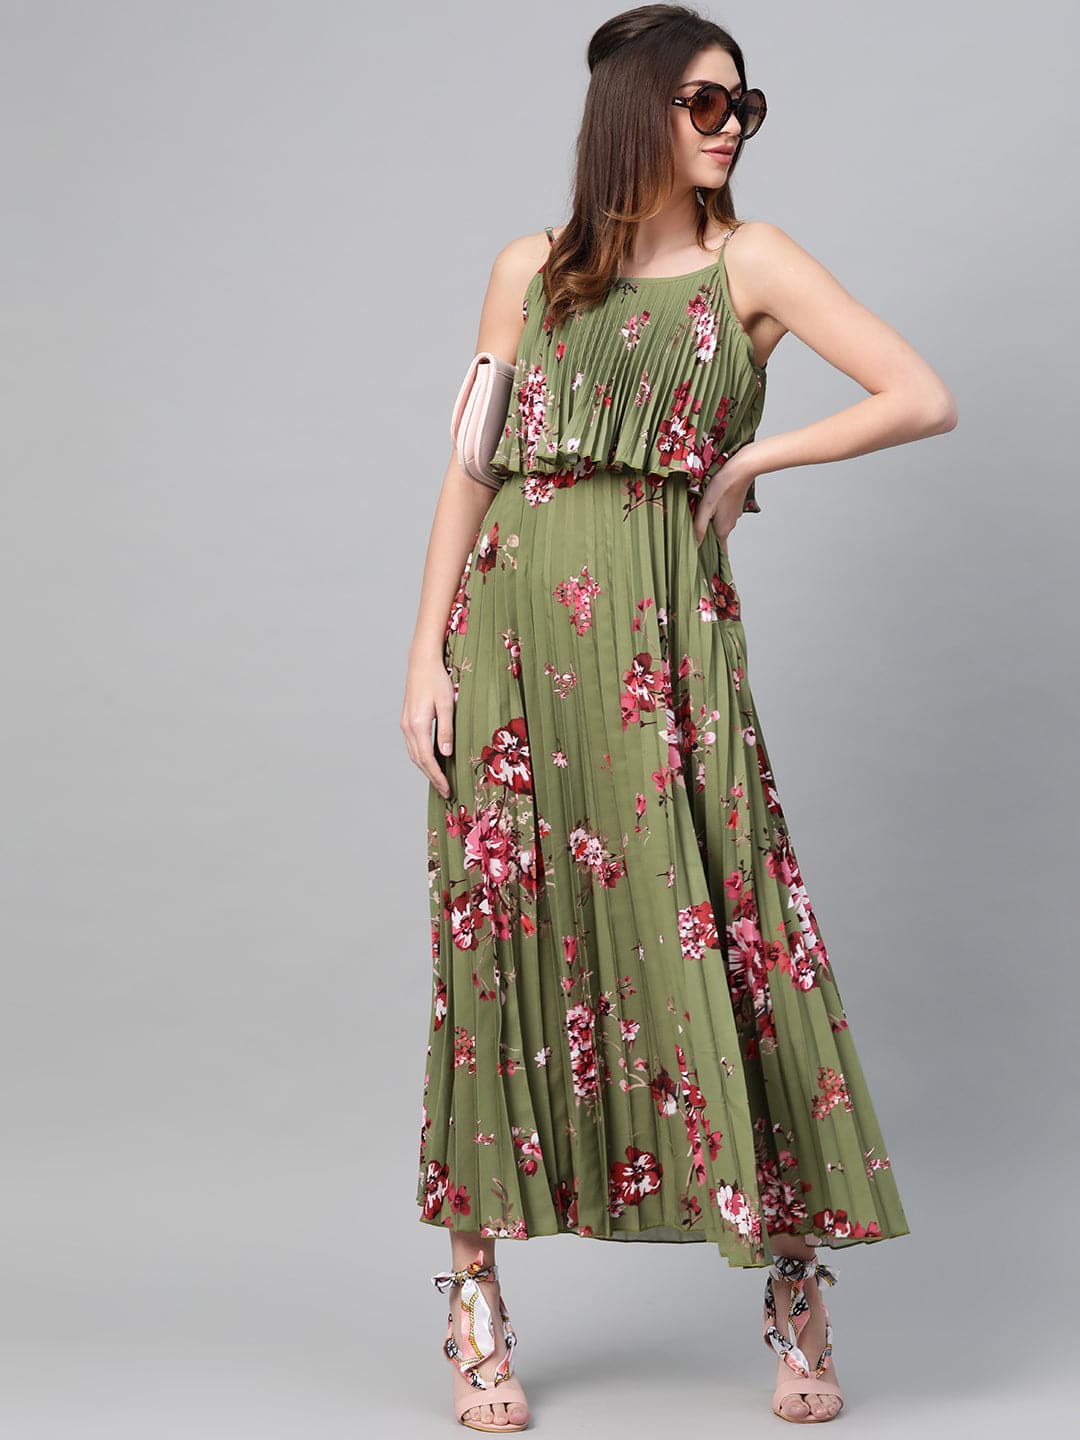 olive layered ethnic dress